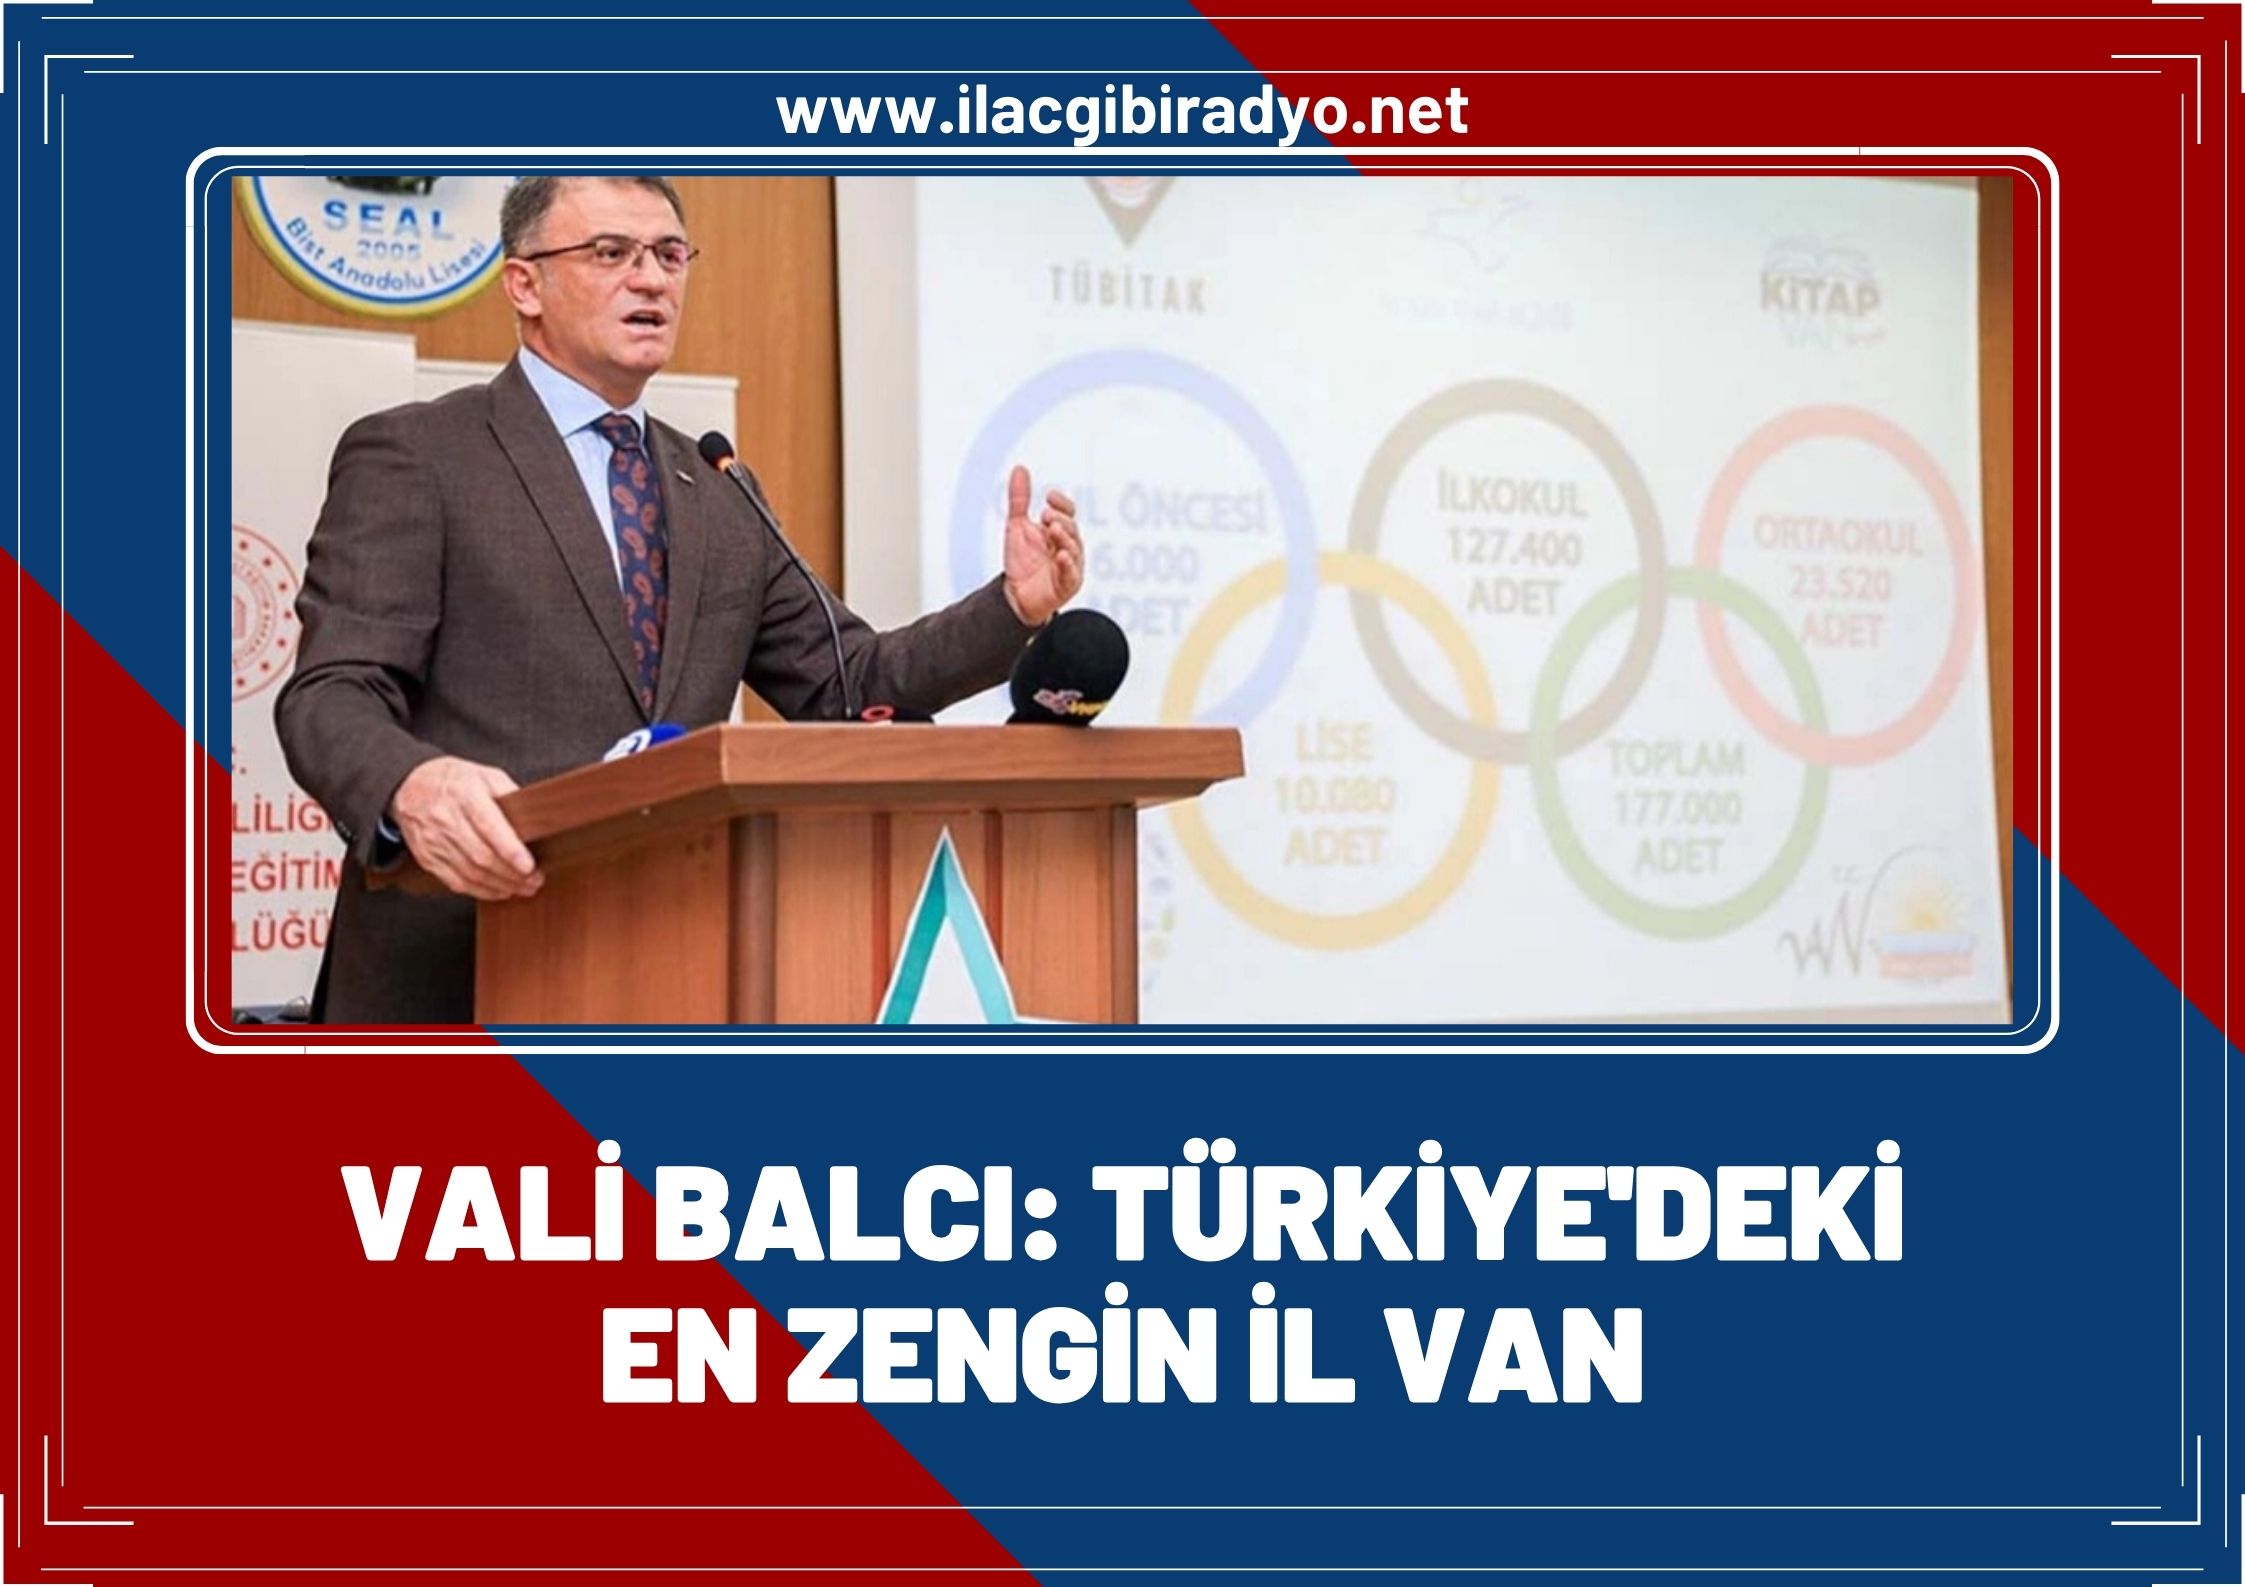 Vali Balcı: Türkiye’deki en zengin il Van